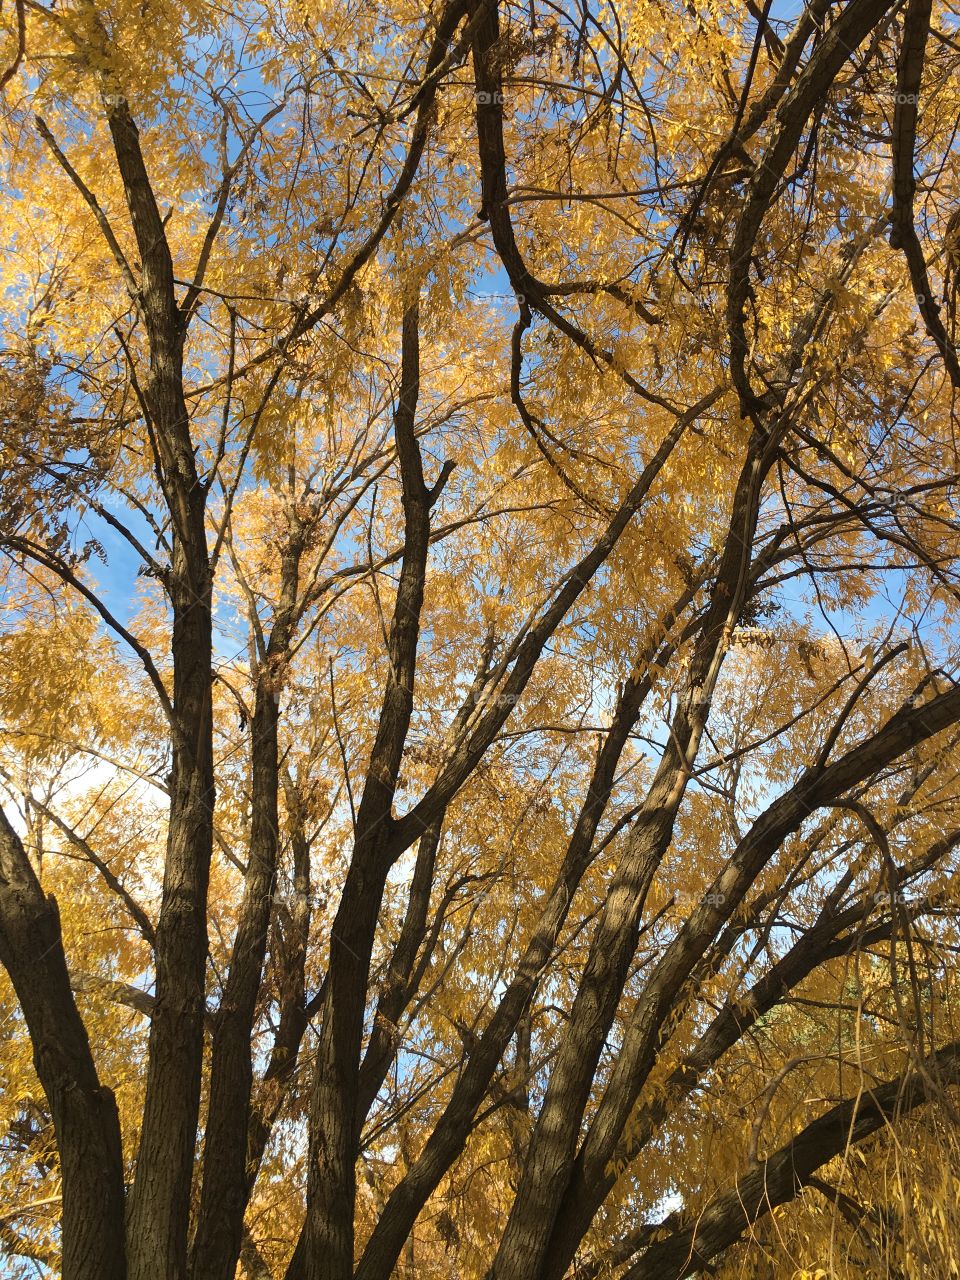 Golden Autumn leaves on tree